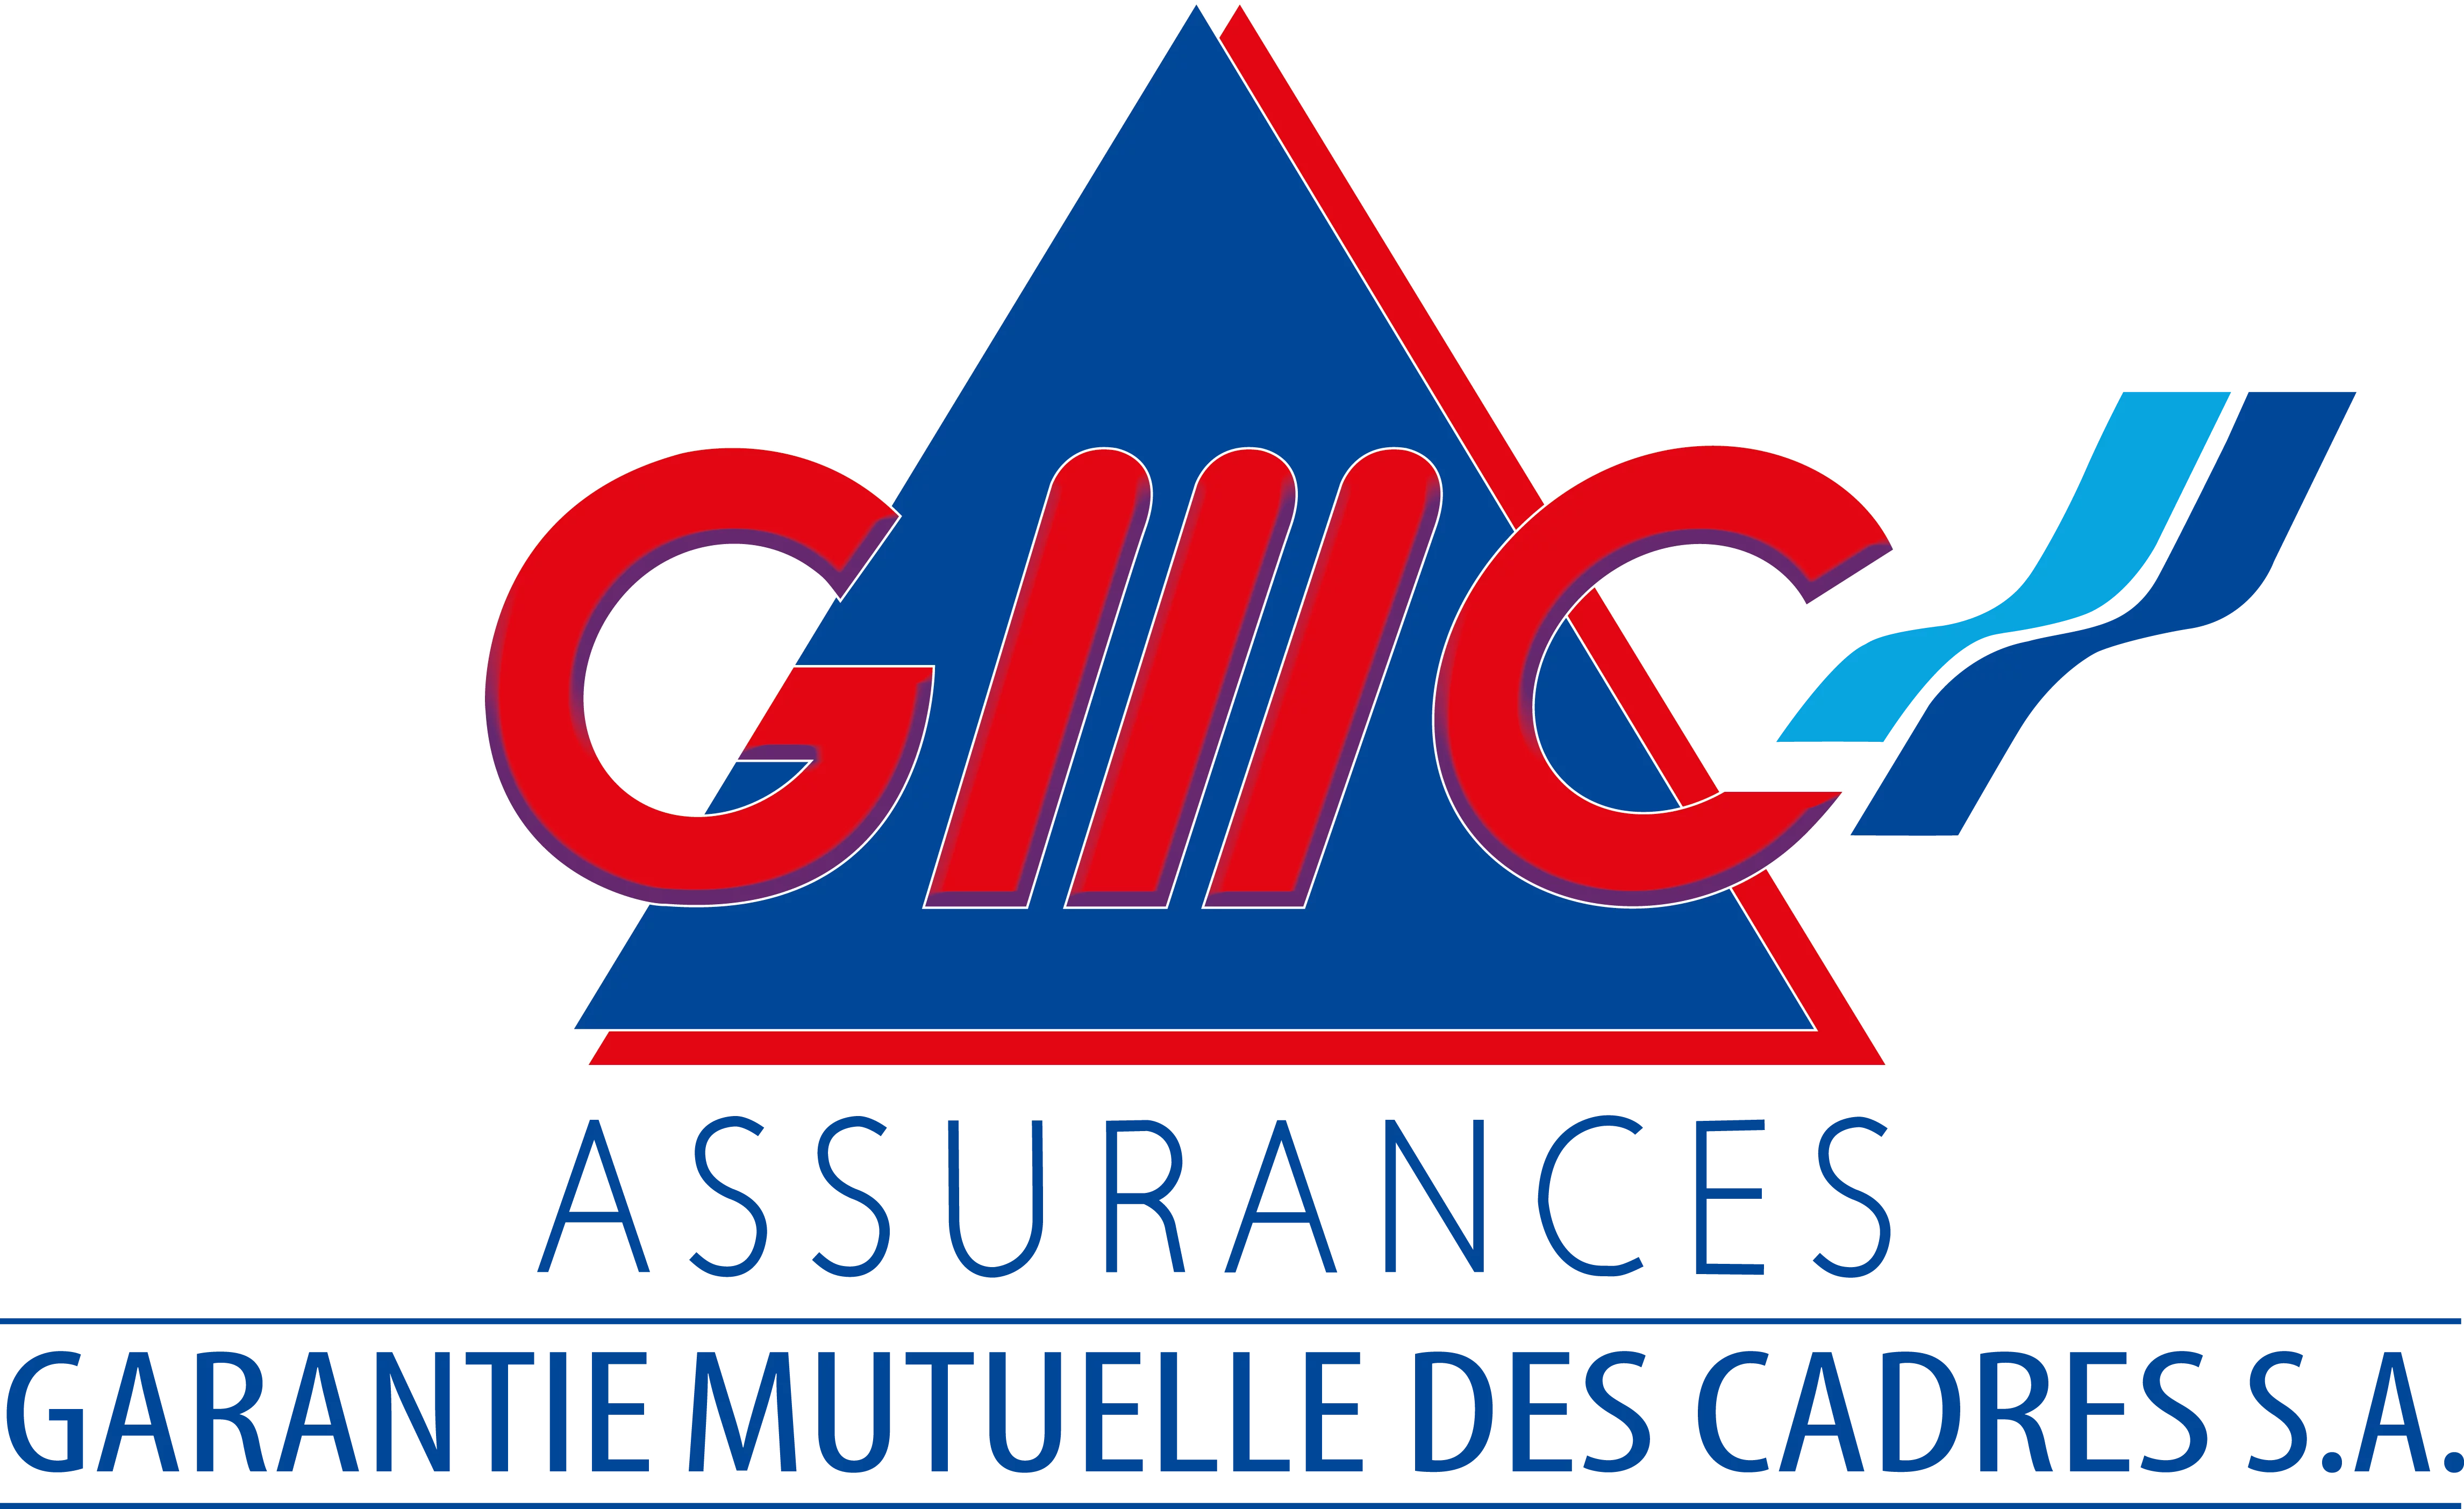 La Garantie Mutuelle des Cadres Assurances recrute des agents commerciaux, Cameroun